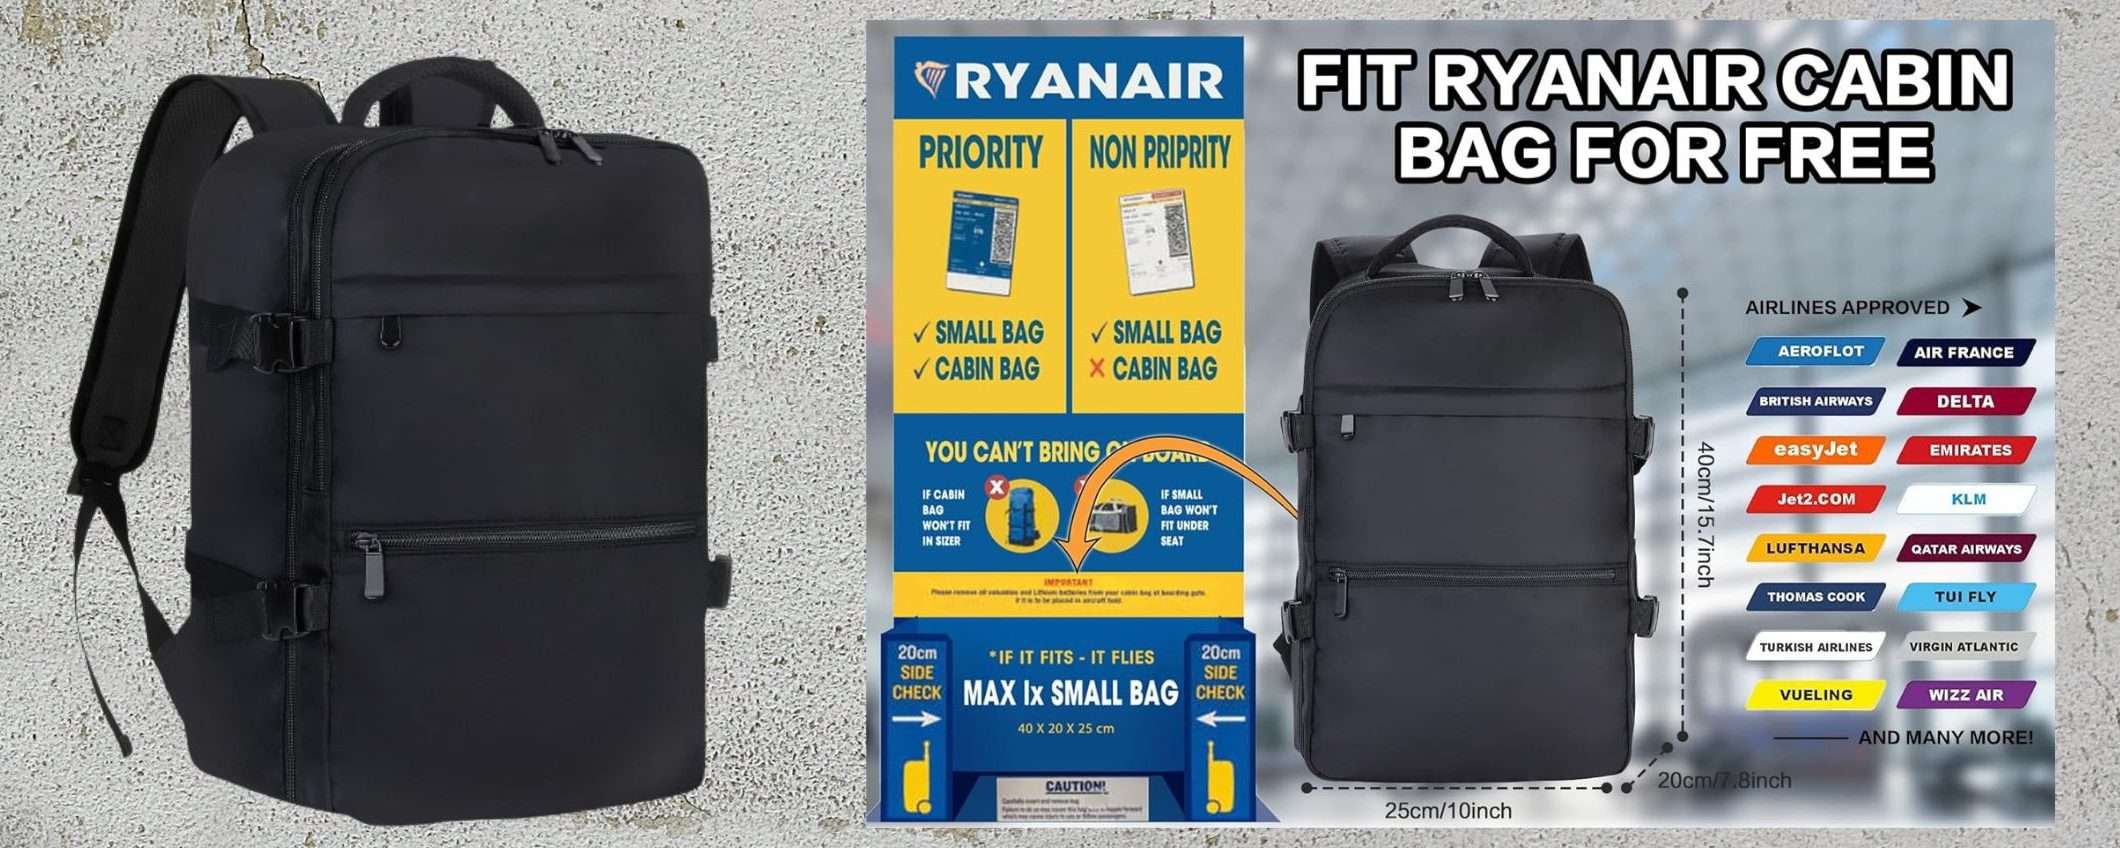 Zaino bagaglio a 24€: GENIALATA per NON pagare più le valigie in aereo